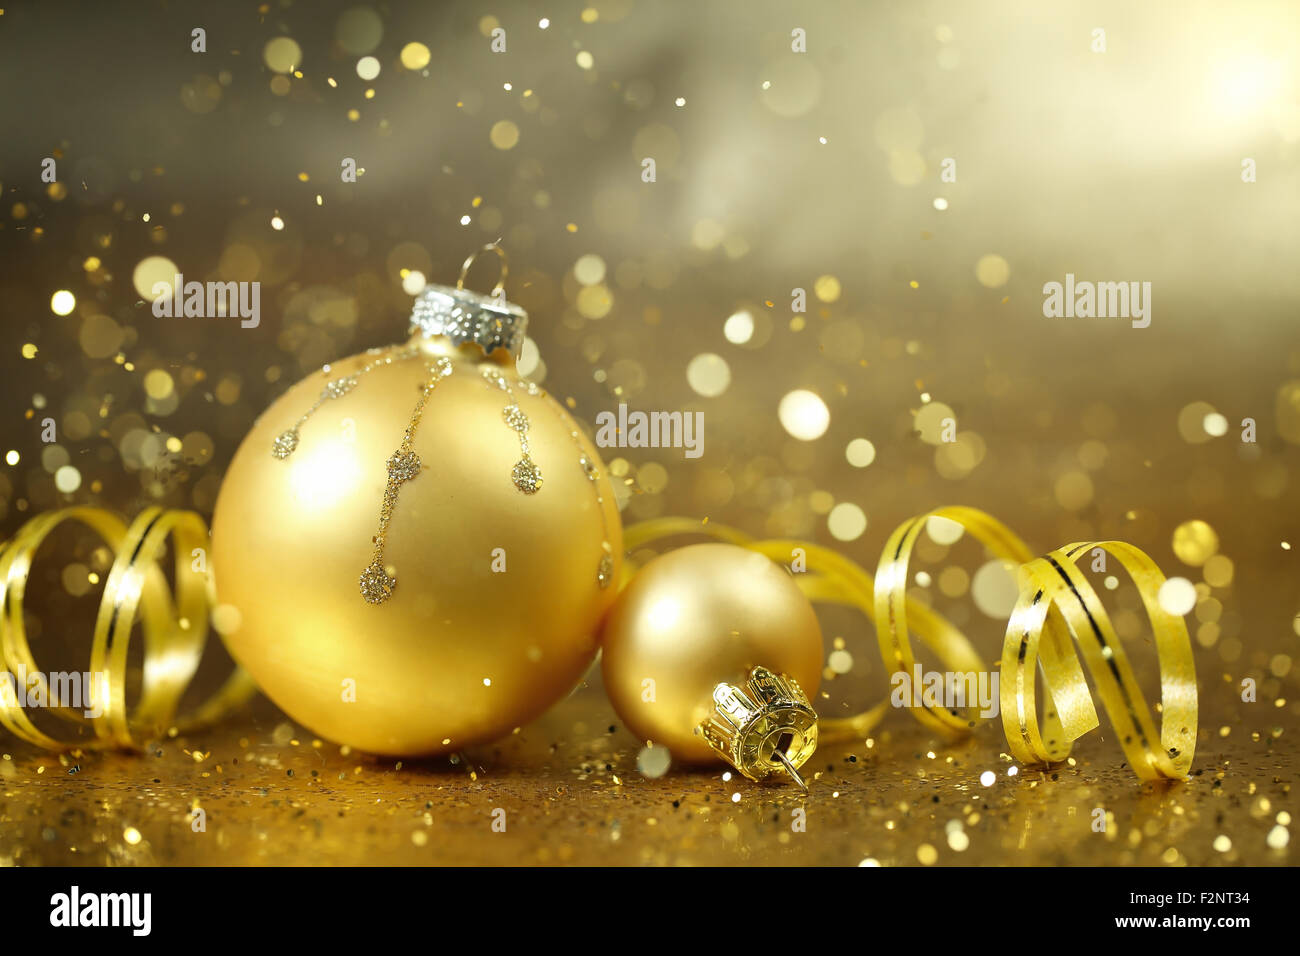 Golden Christmas balls on glitter background Stock Photo